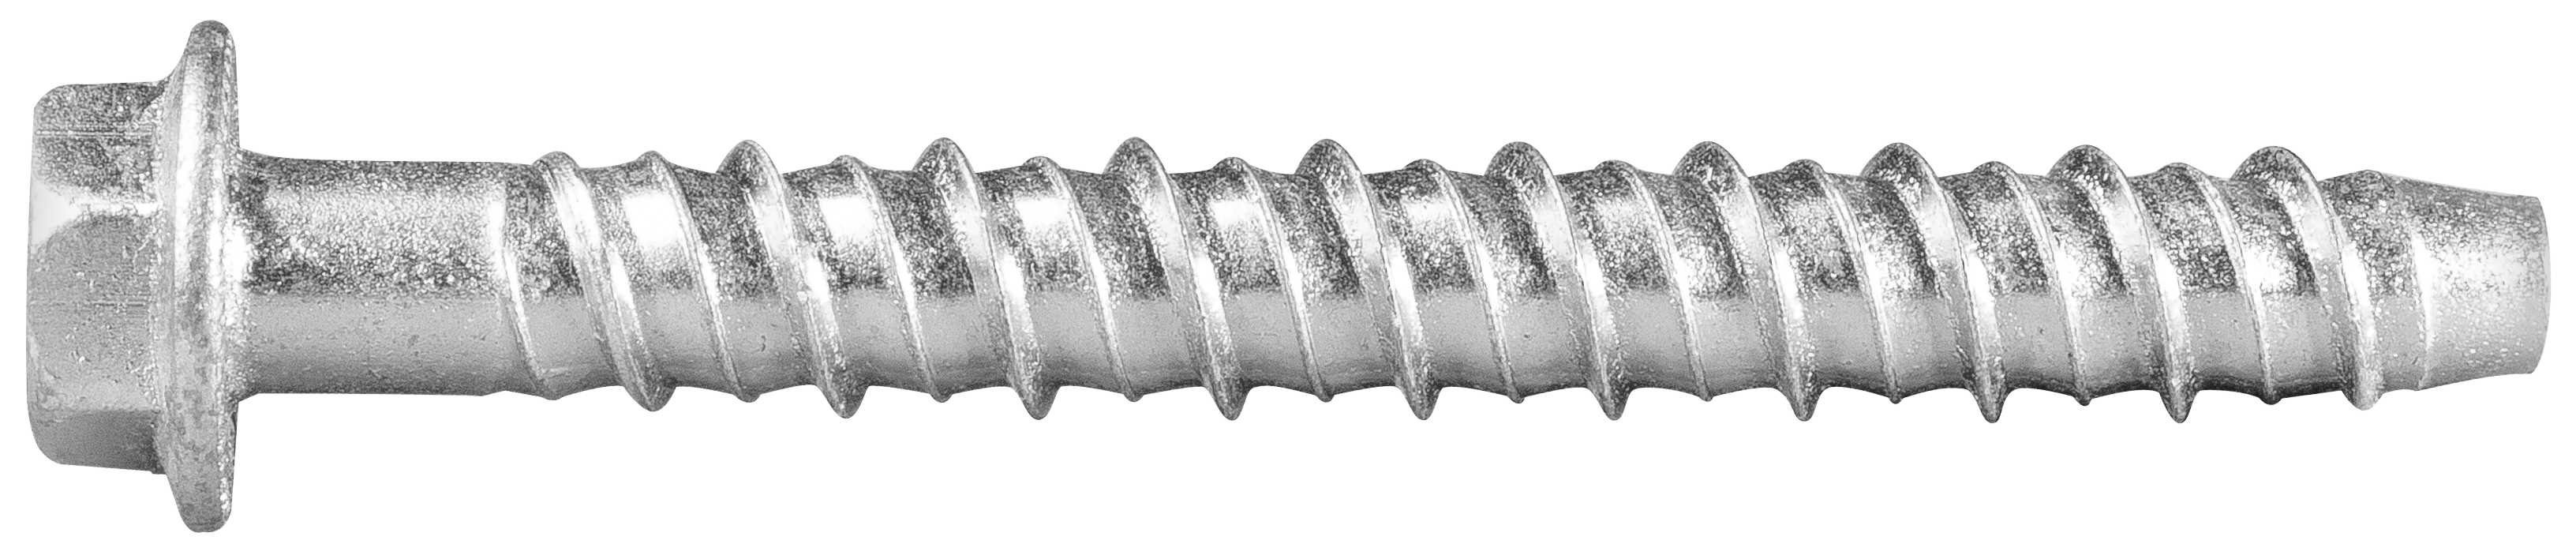 R-LX-HF-ZP-univerzální šroub do betonu s povrchovou úpravou galvanického zinkování s šestihrannou hlavou s integrovanou podložkou